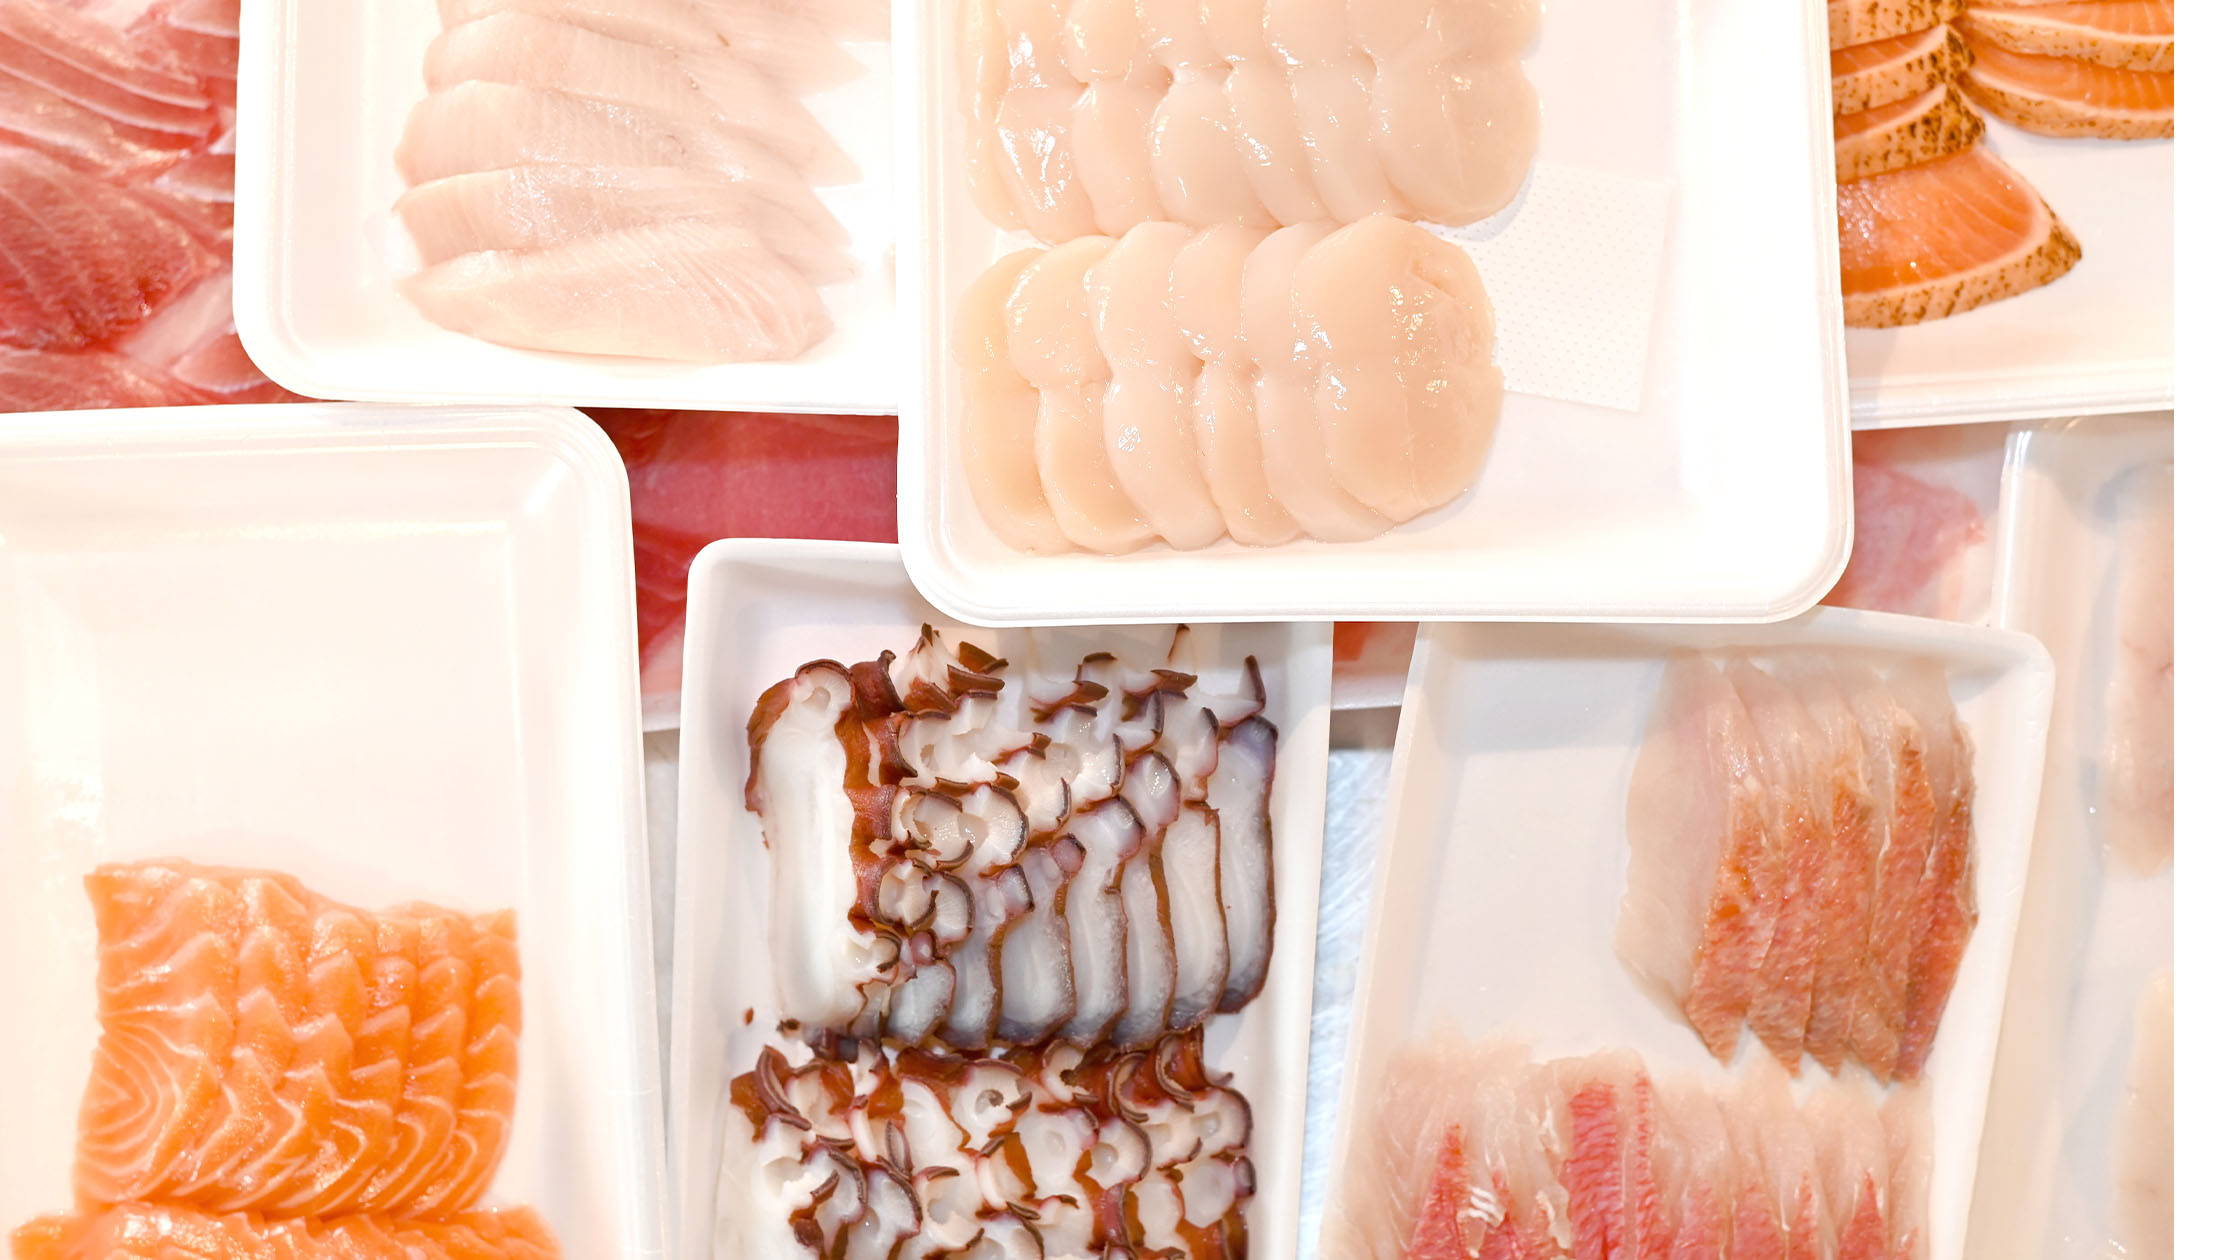 DIY Sushi Kit with Sashimi Grade Fish